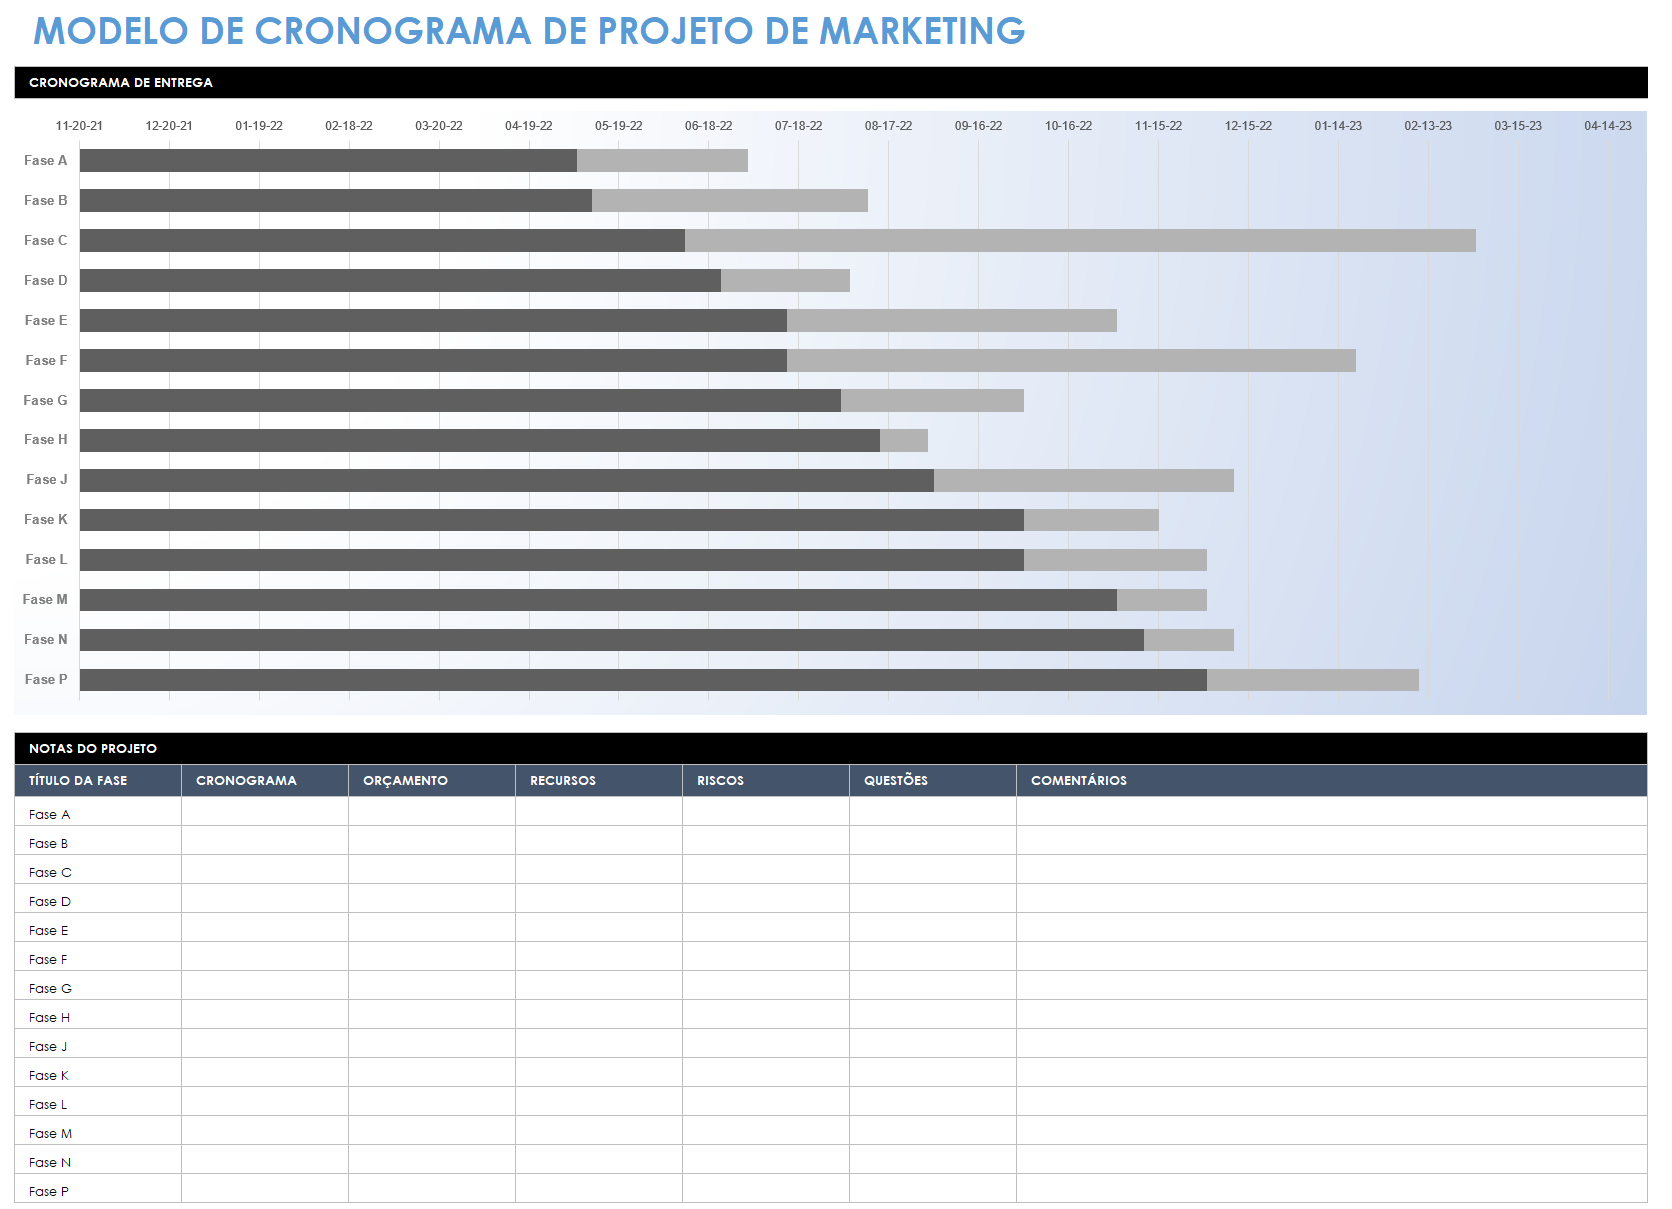  modelo de cronograma do projeto de marketing